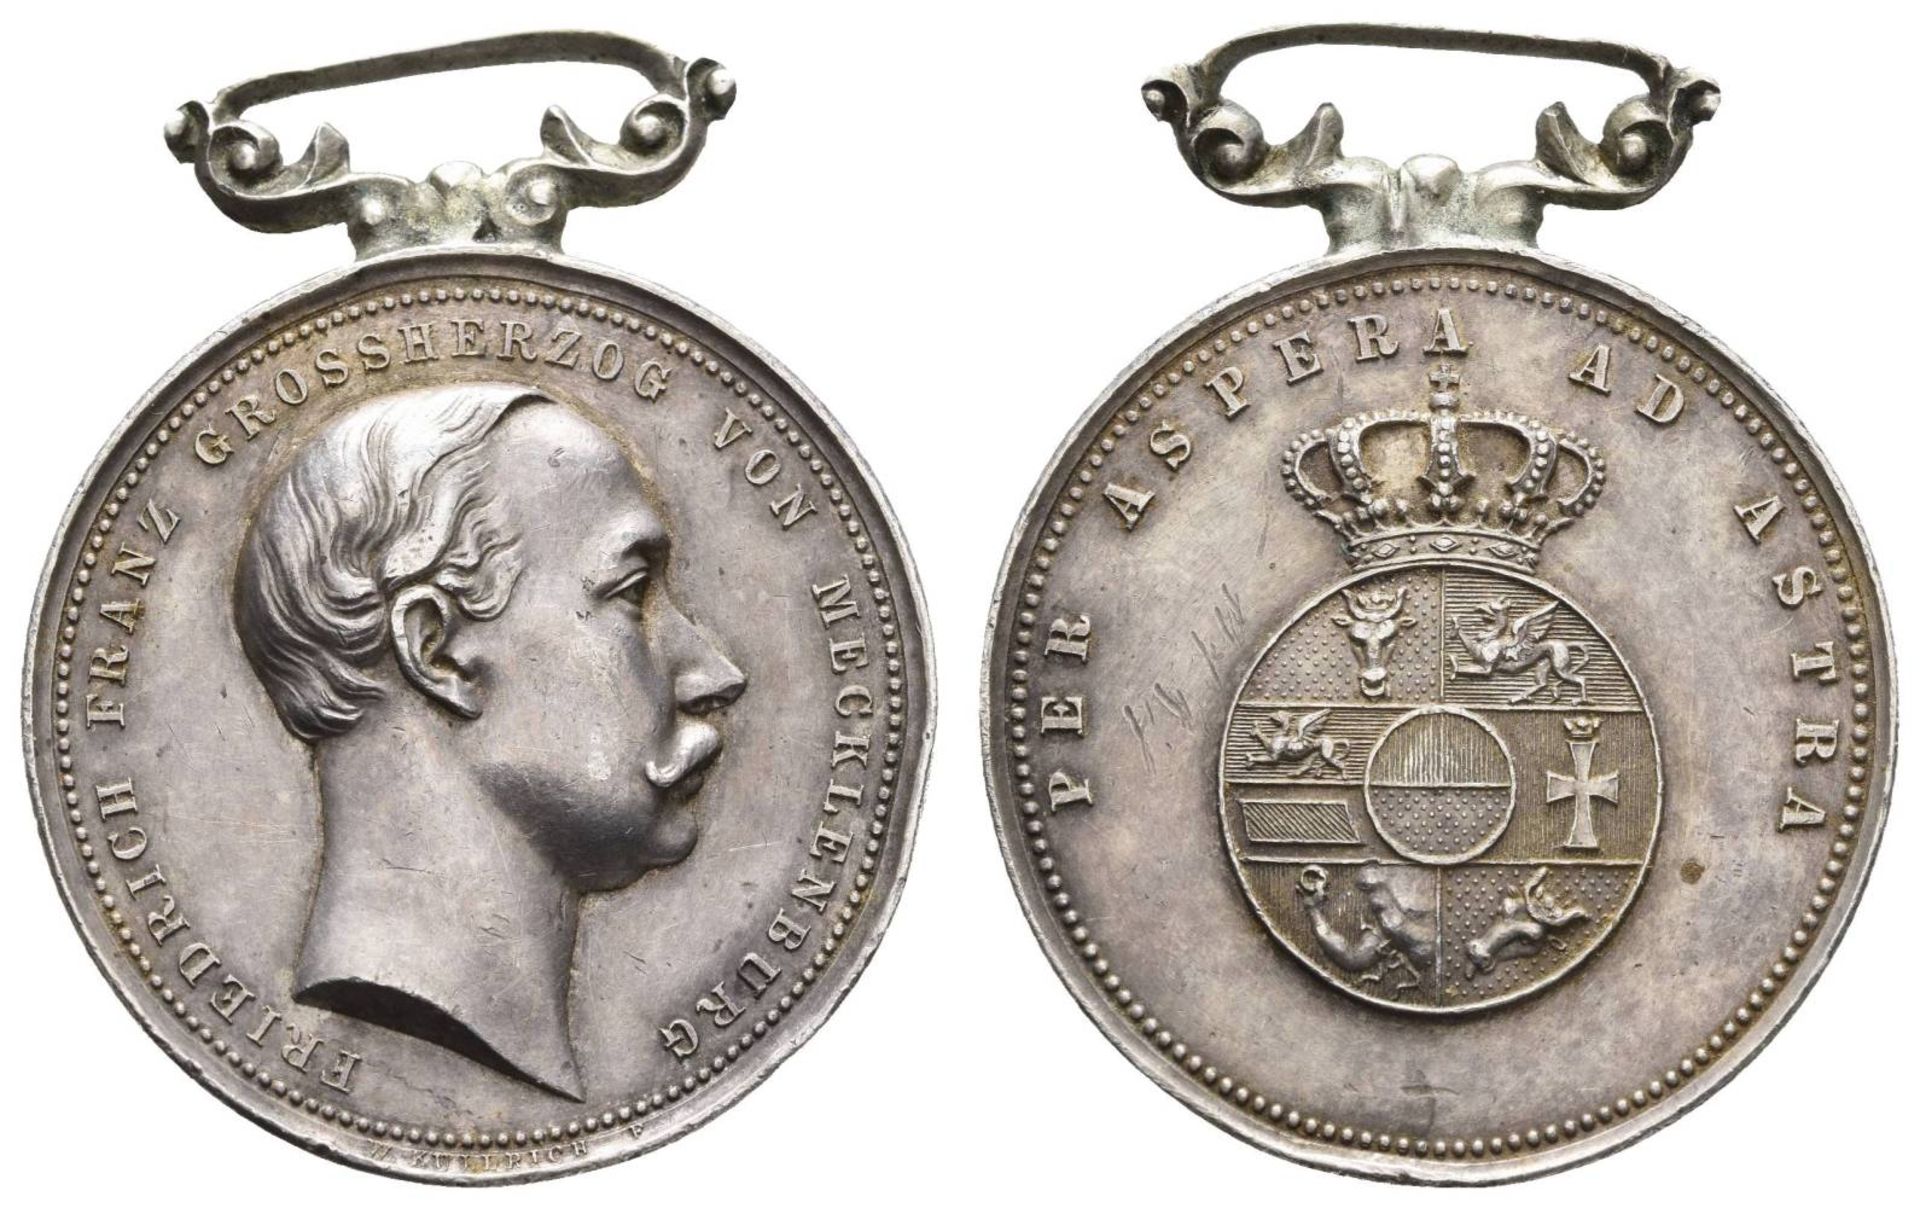 Mecklenburg-Schwerin, silberne Medaille, Friedrich Franz III., für Zivilpersonen,1885-1918, OEK - Bild 2 aus 2